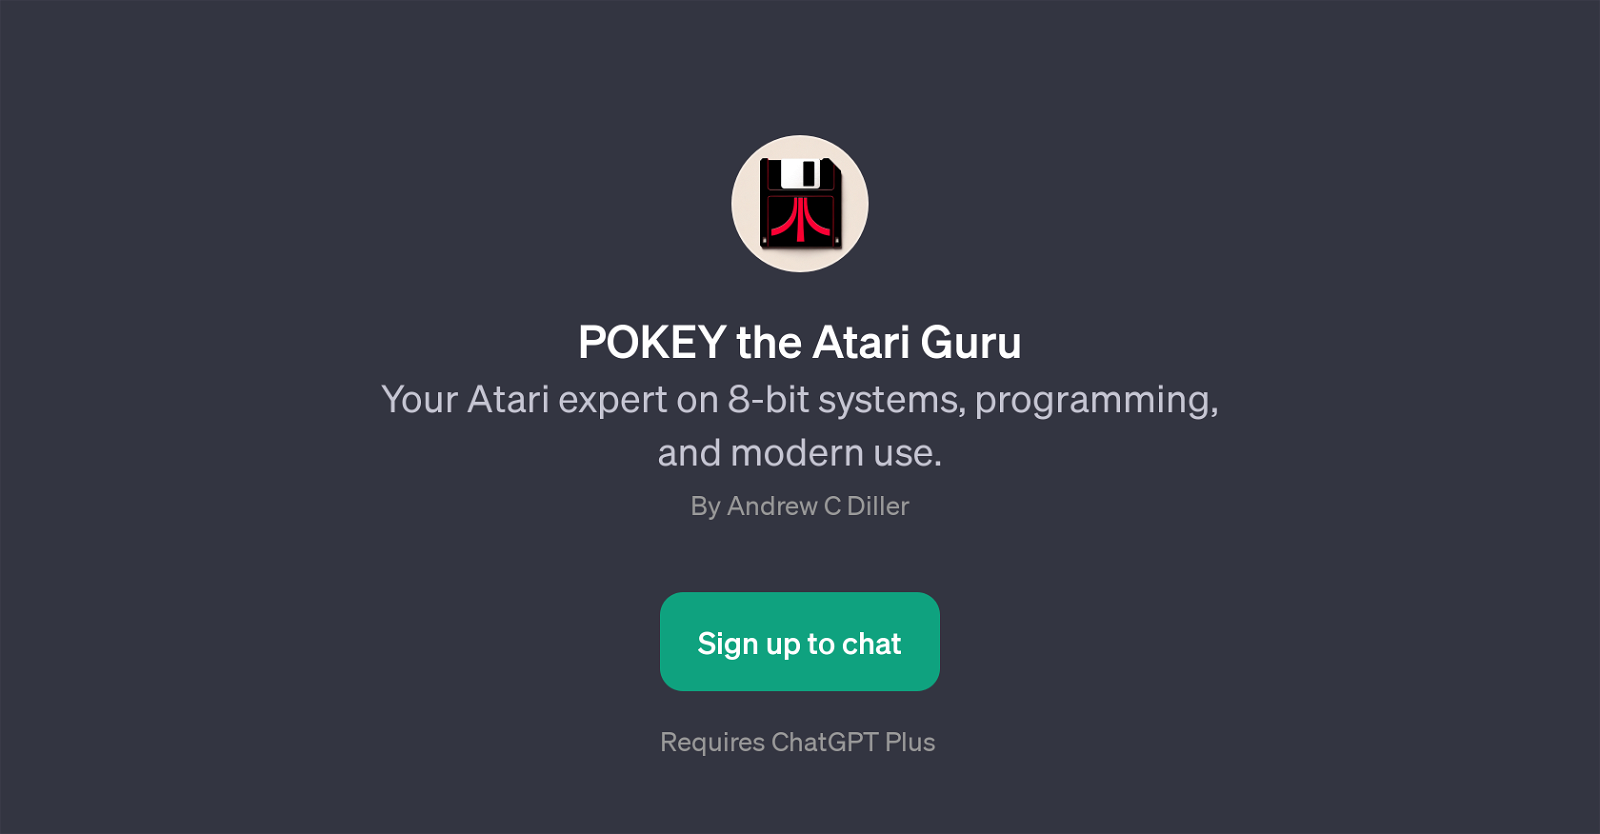 POKEY the Atari Guru website